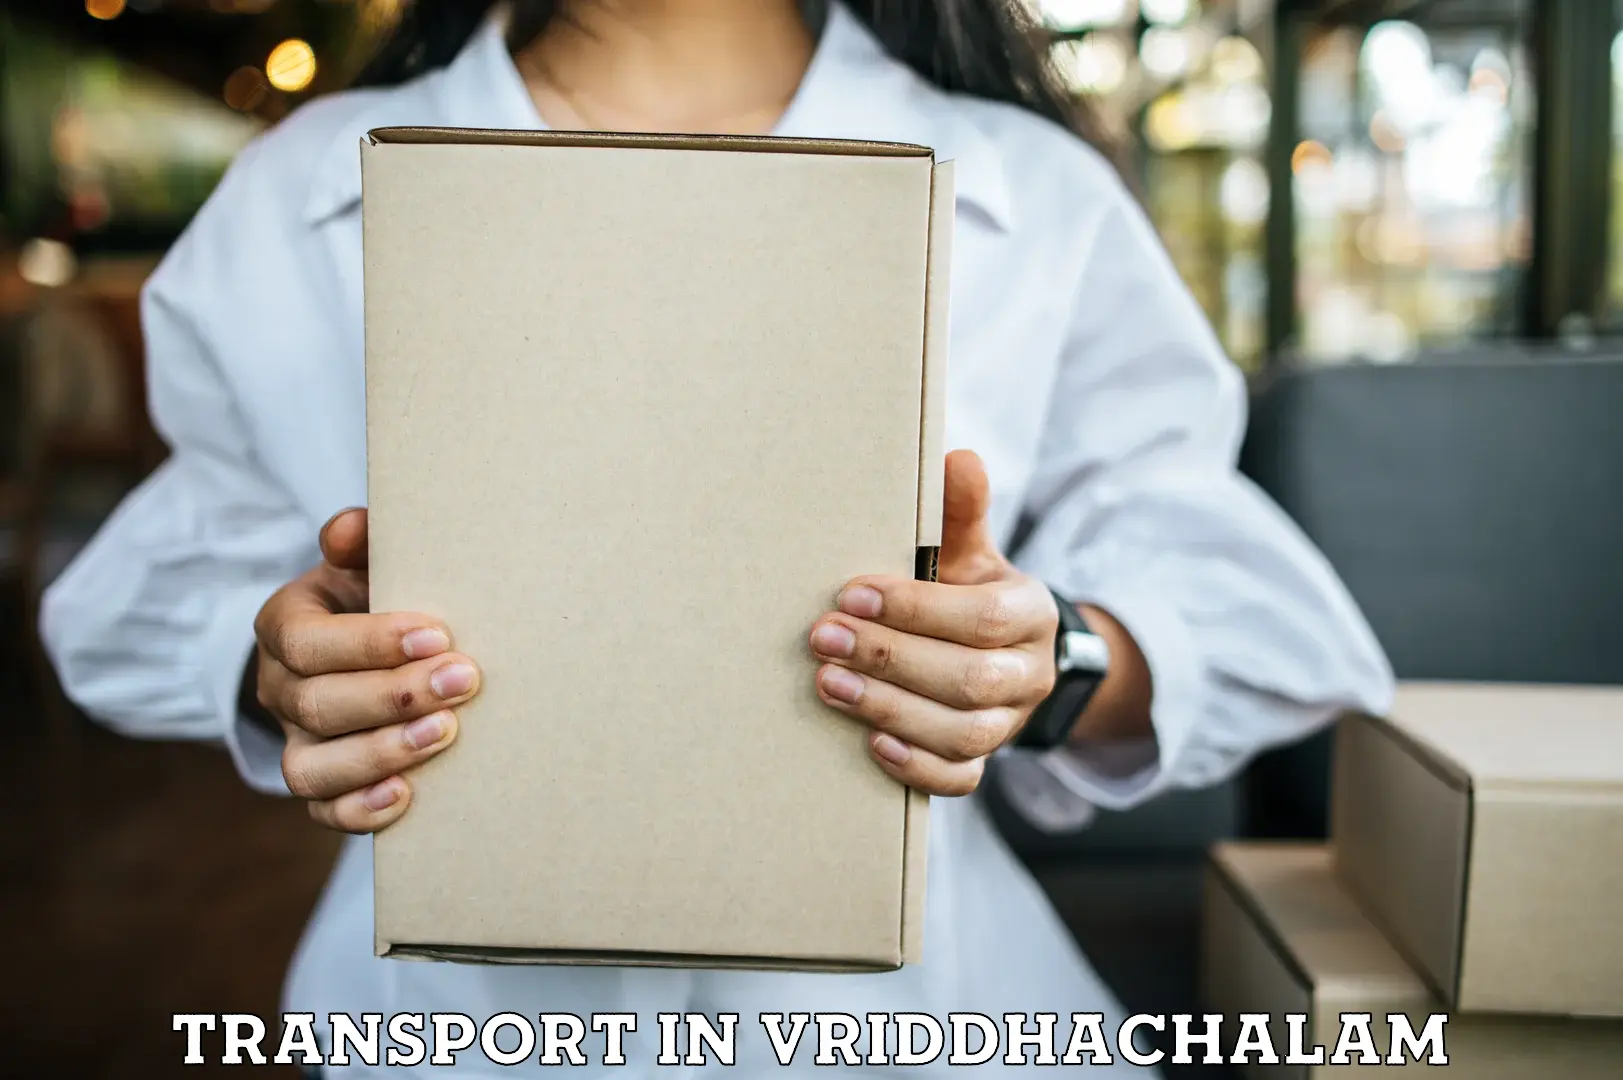 Nearest transport service in Vriddhachalam